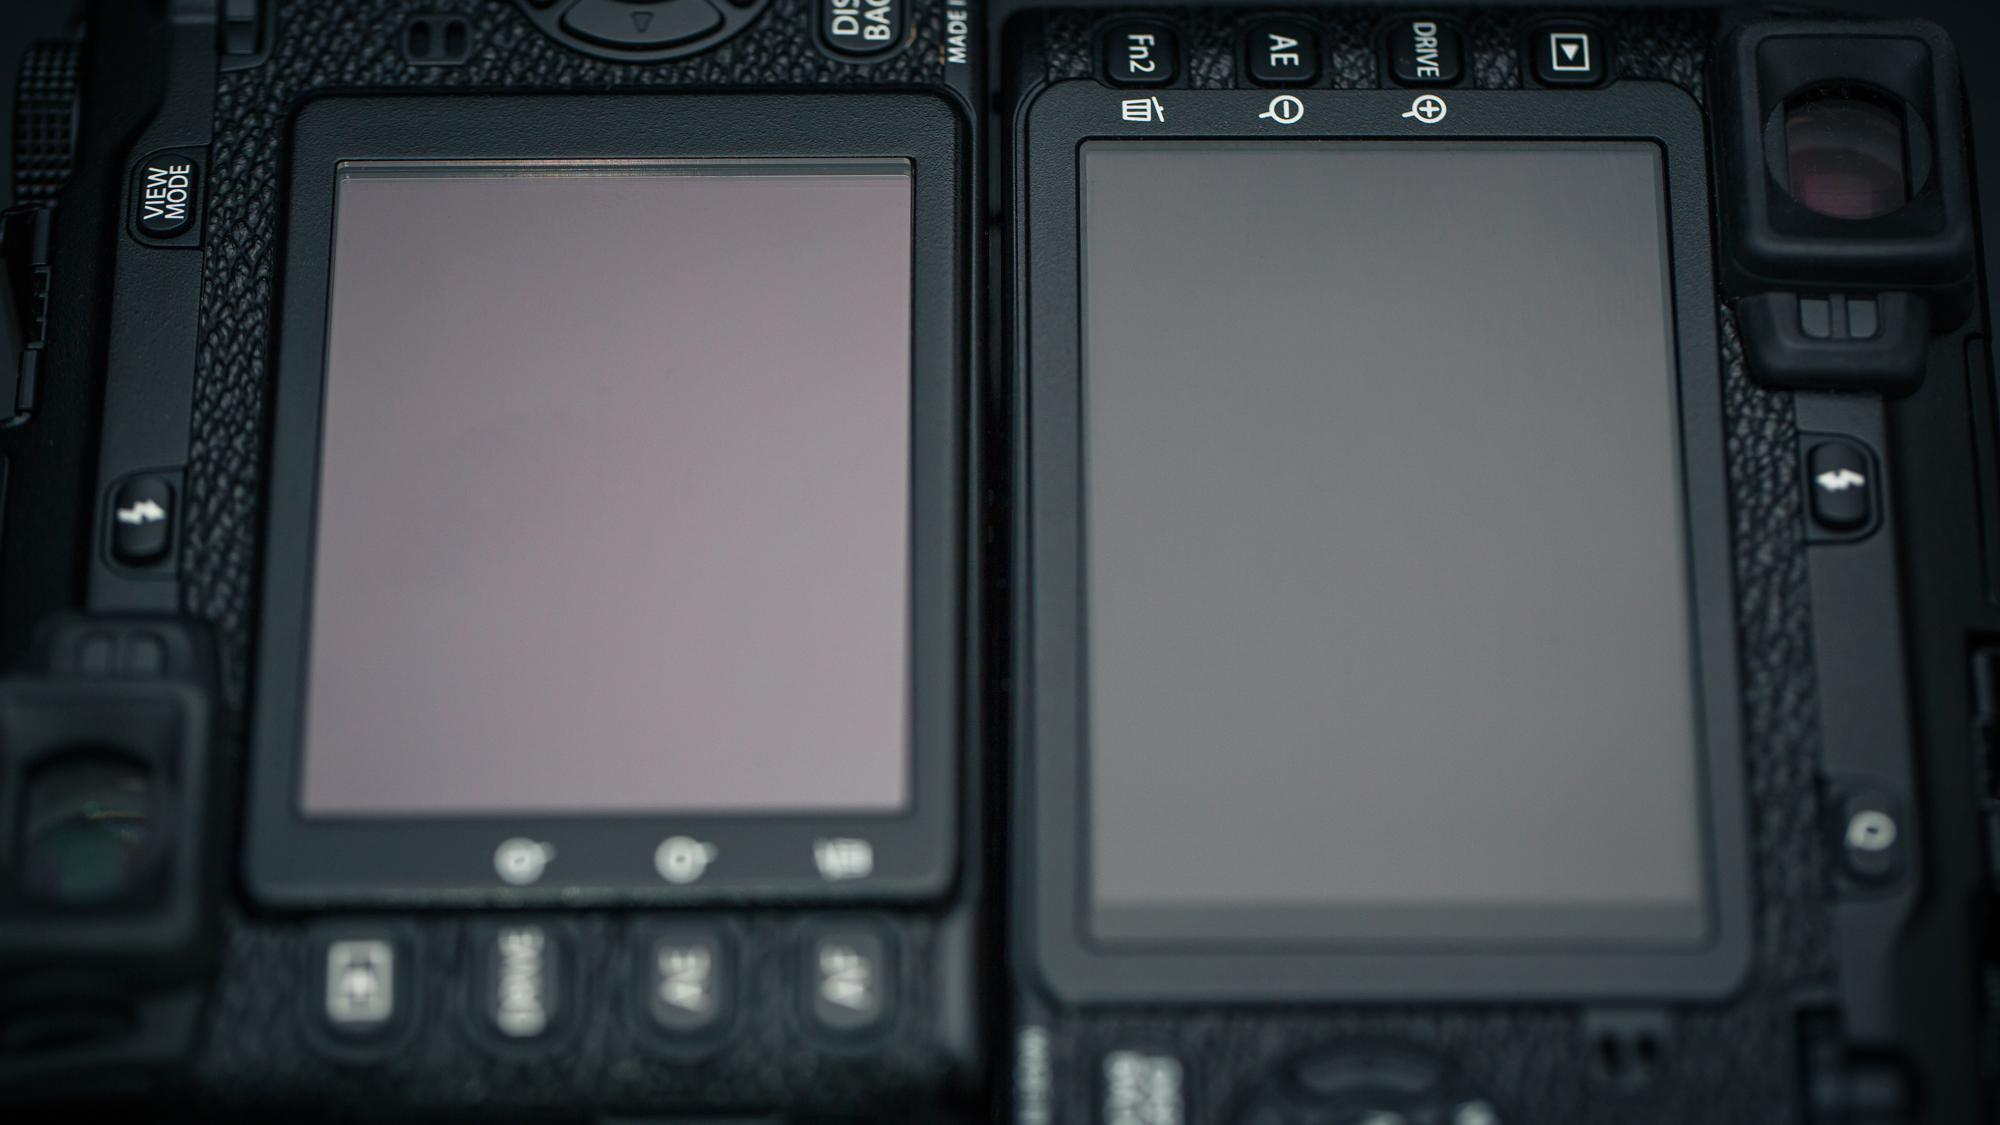 X-E2 (til høyre) har større skjerm enn X-E1. (Foto: Johannes Granseth)